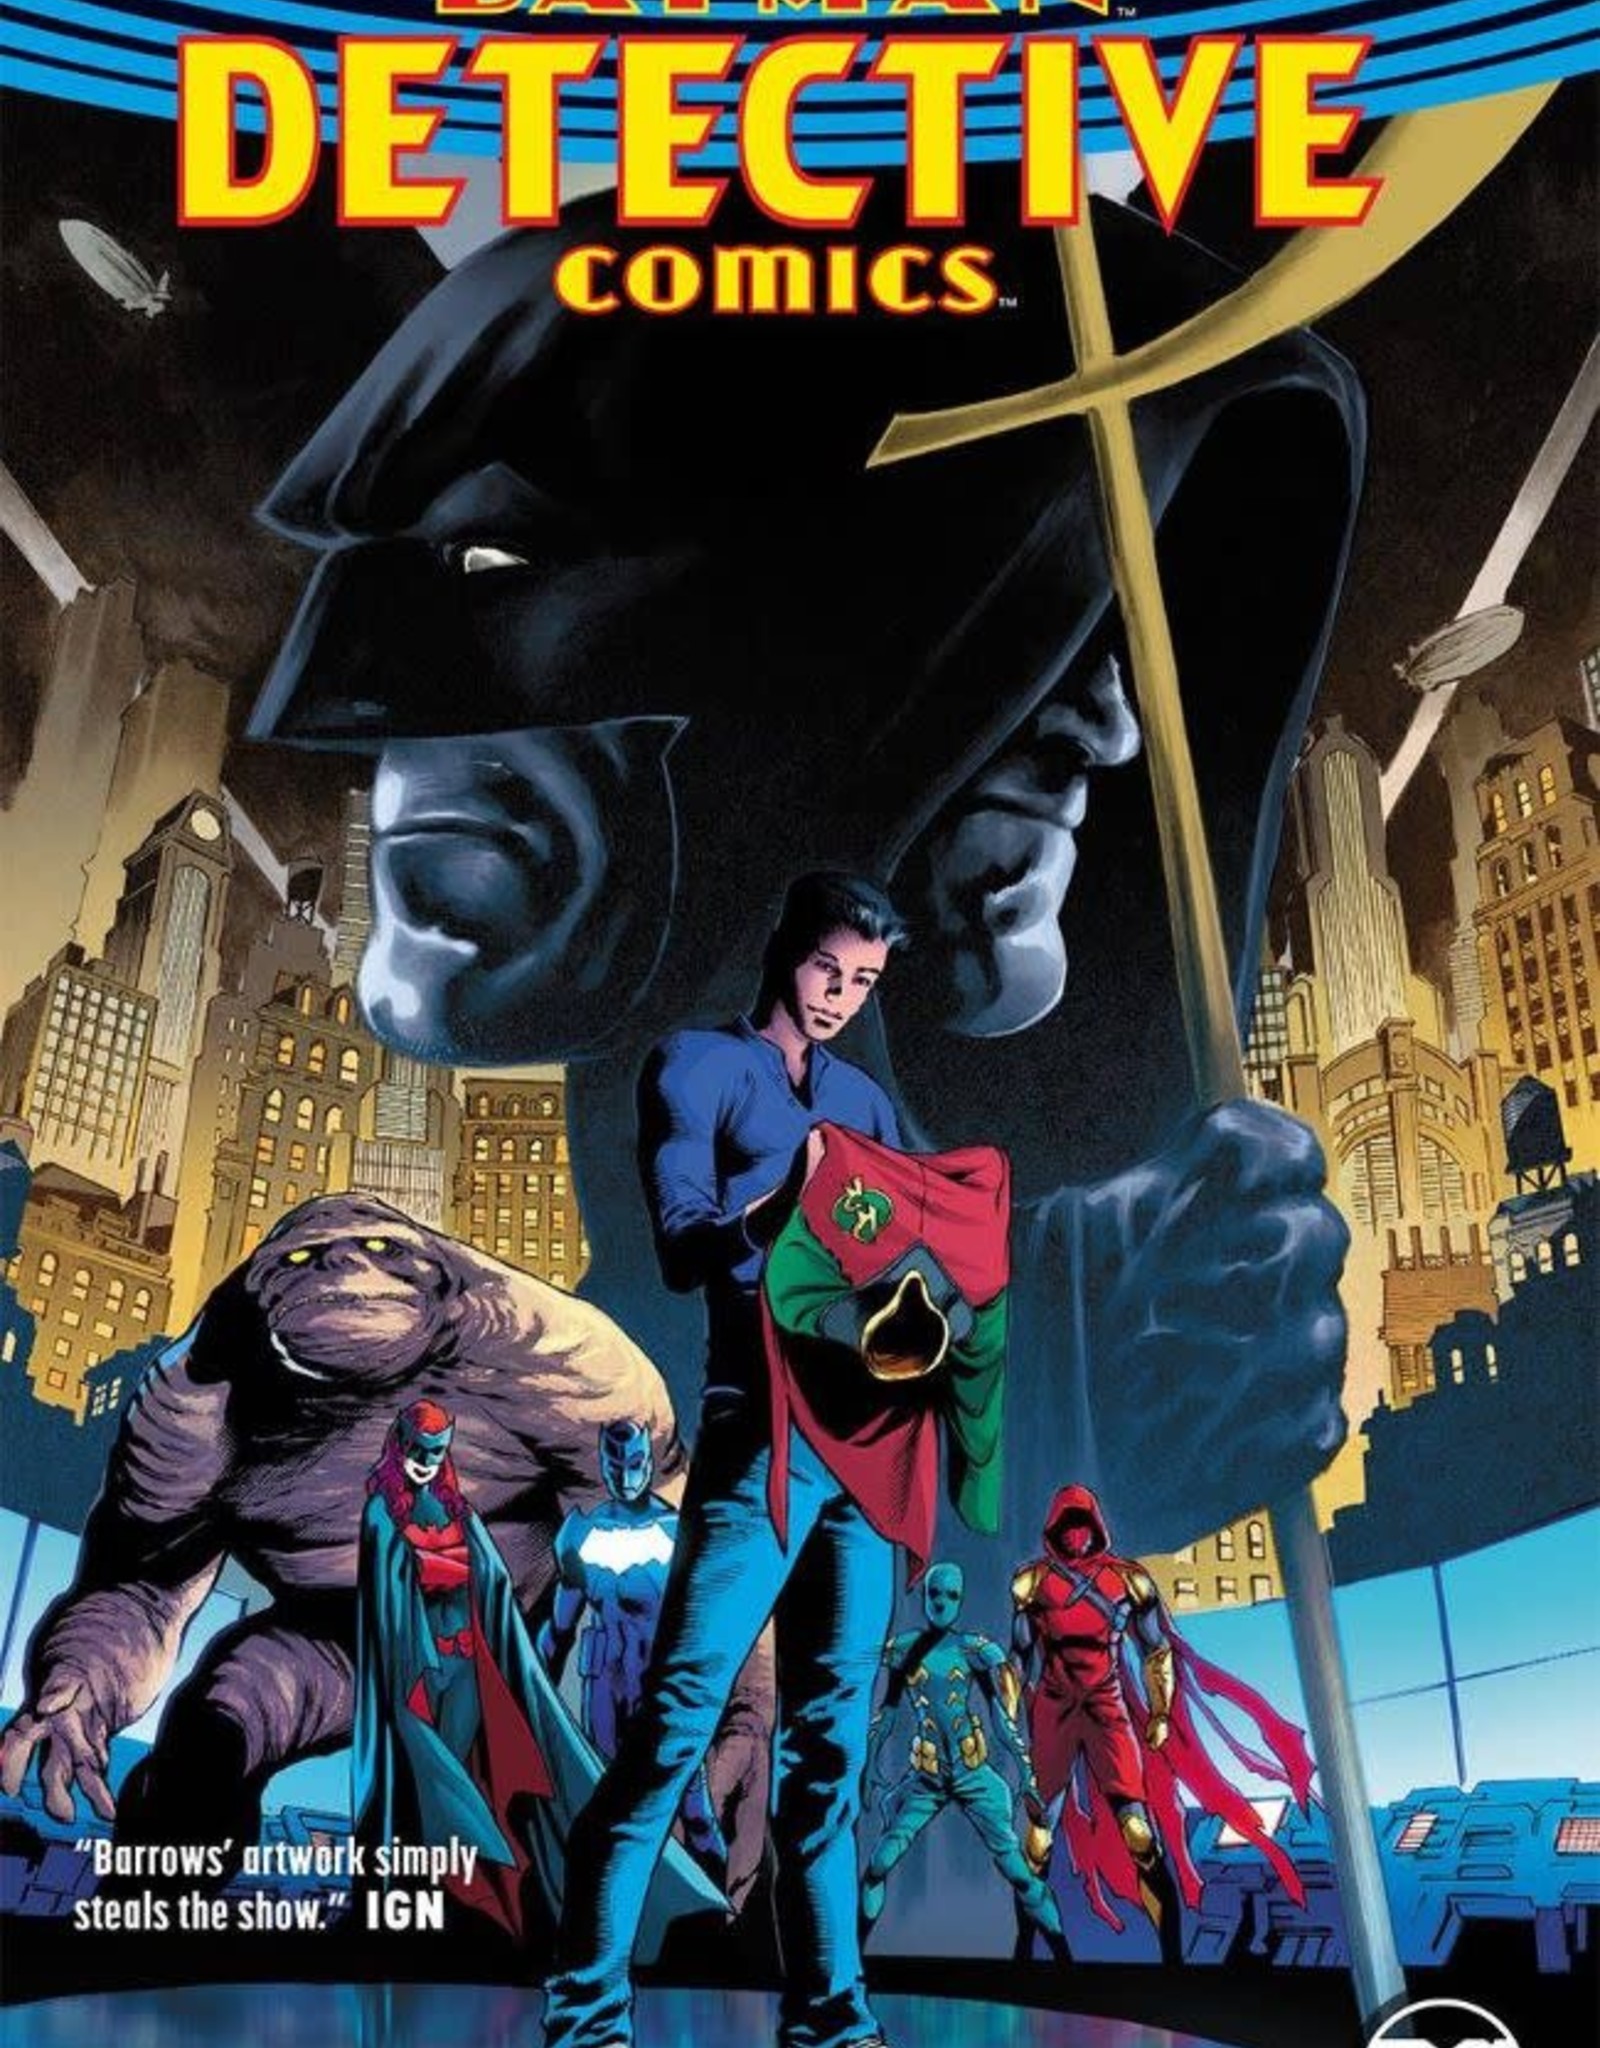 DC Comics Batman Detective Comics TP Vol 05 A Lonely Place Of Living